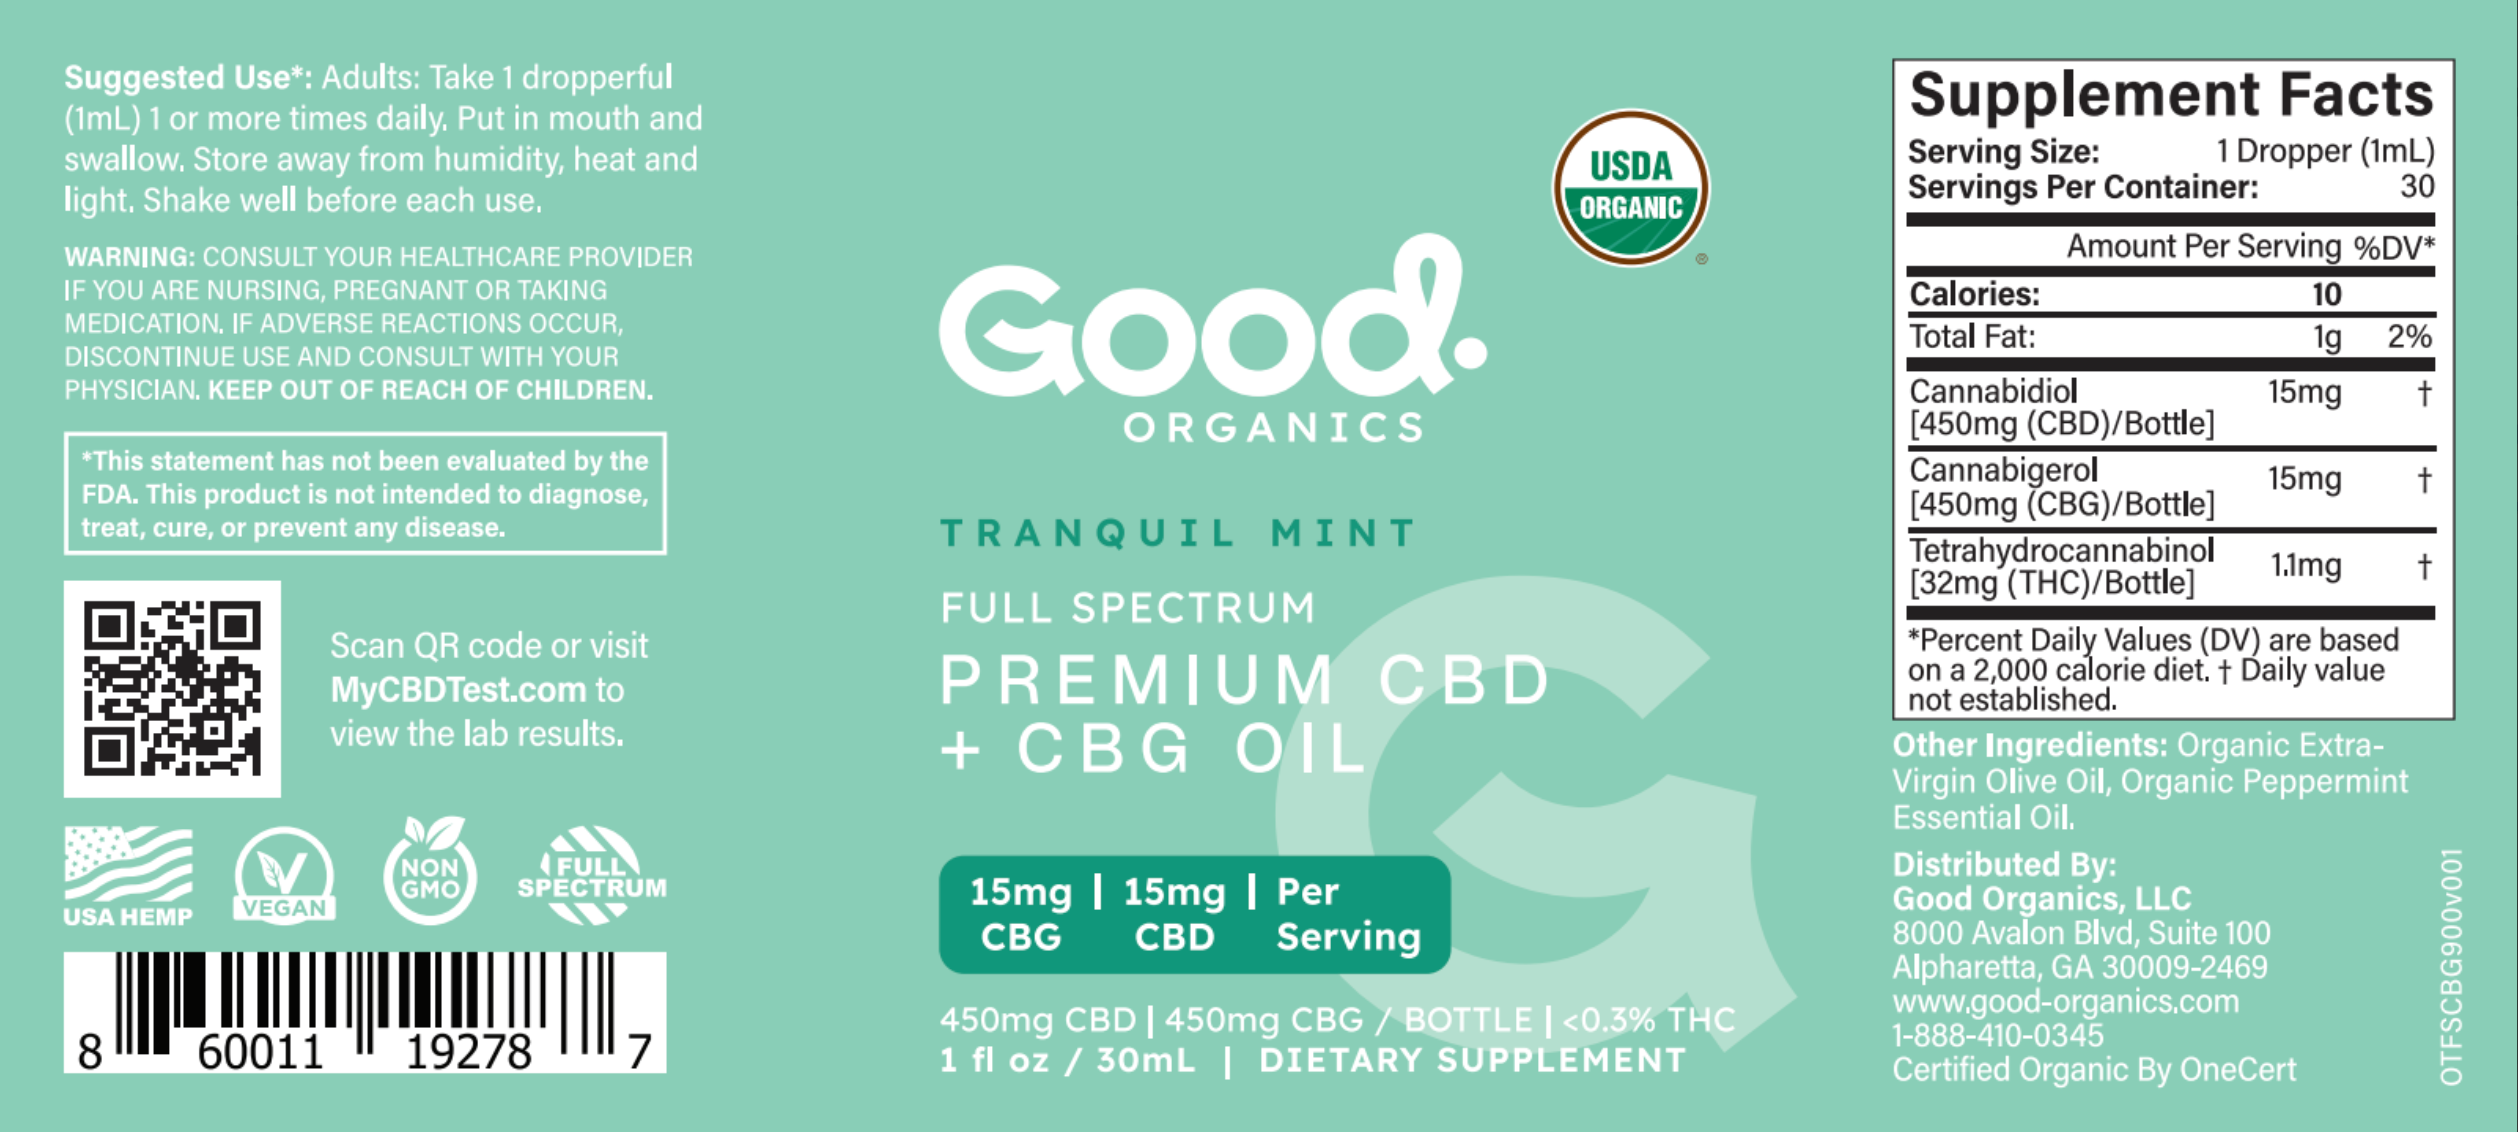 Organic CBD + CBG Tincture - Good Organics